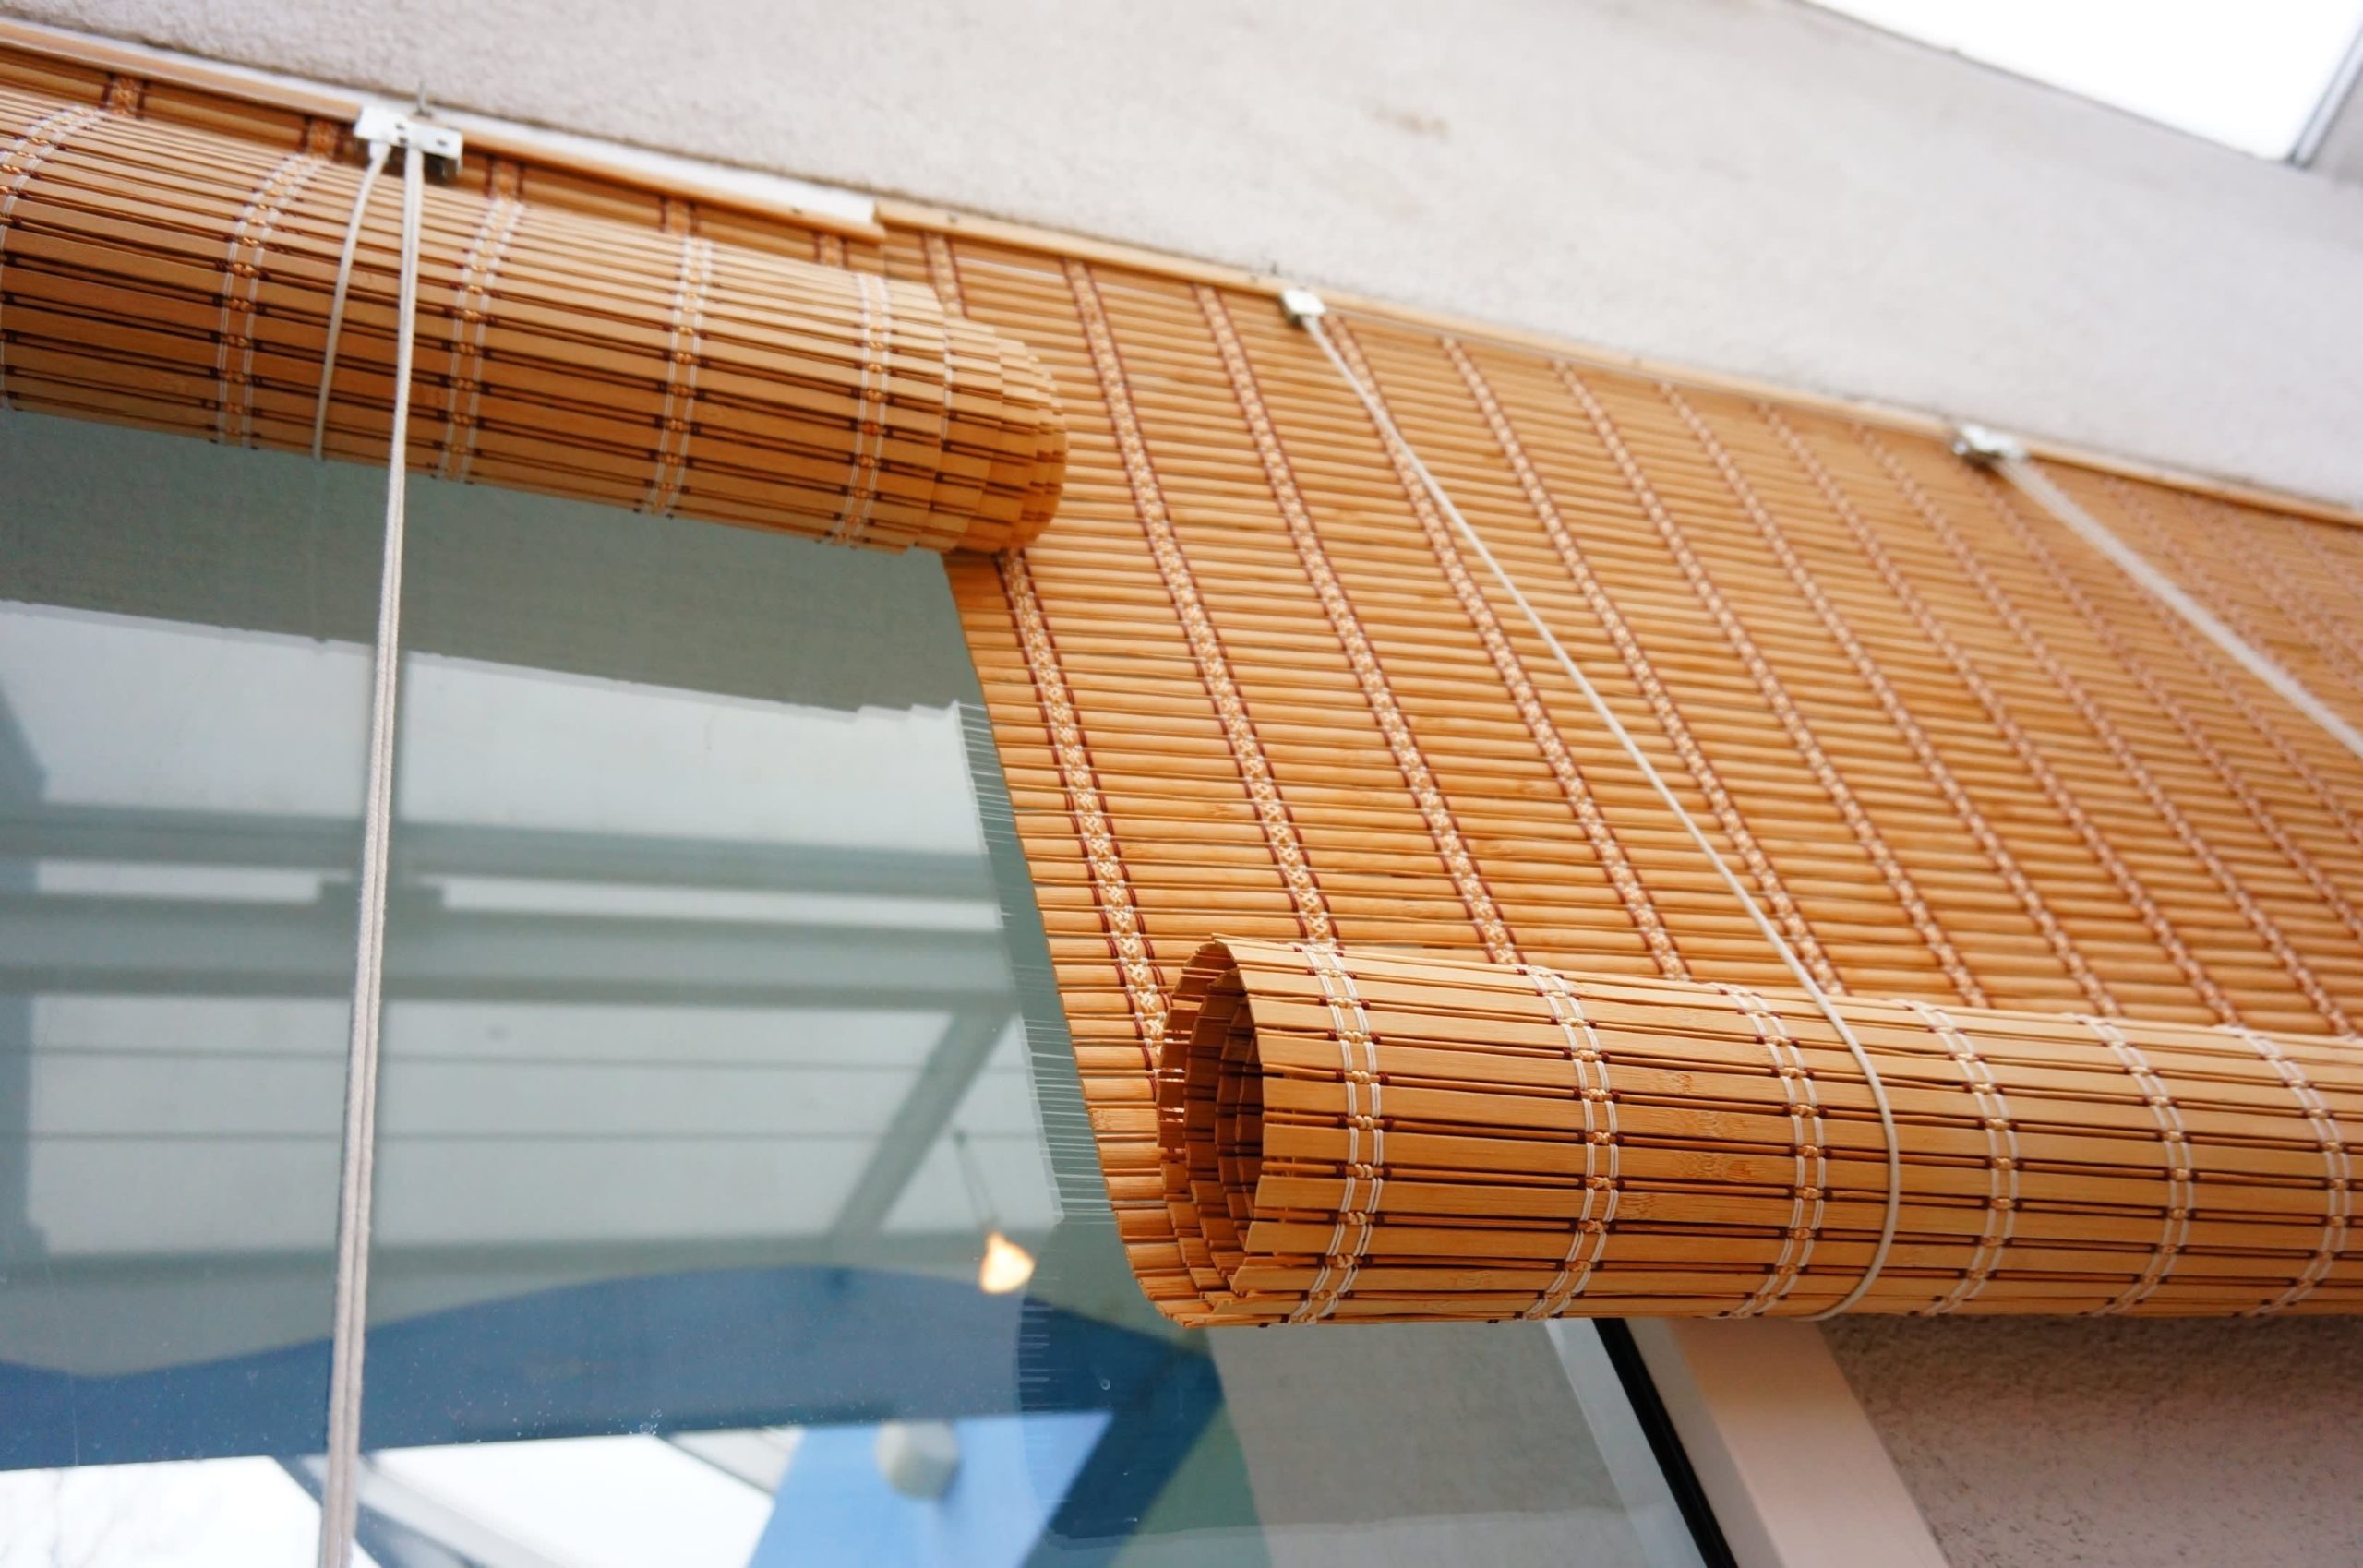 Rèm cửa ban công cách nhiệt hiệu quả, giữ không khí trong nhà luôn mát mẻ